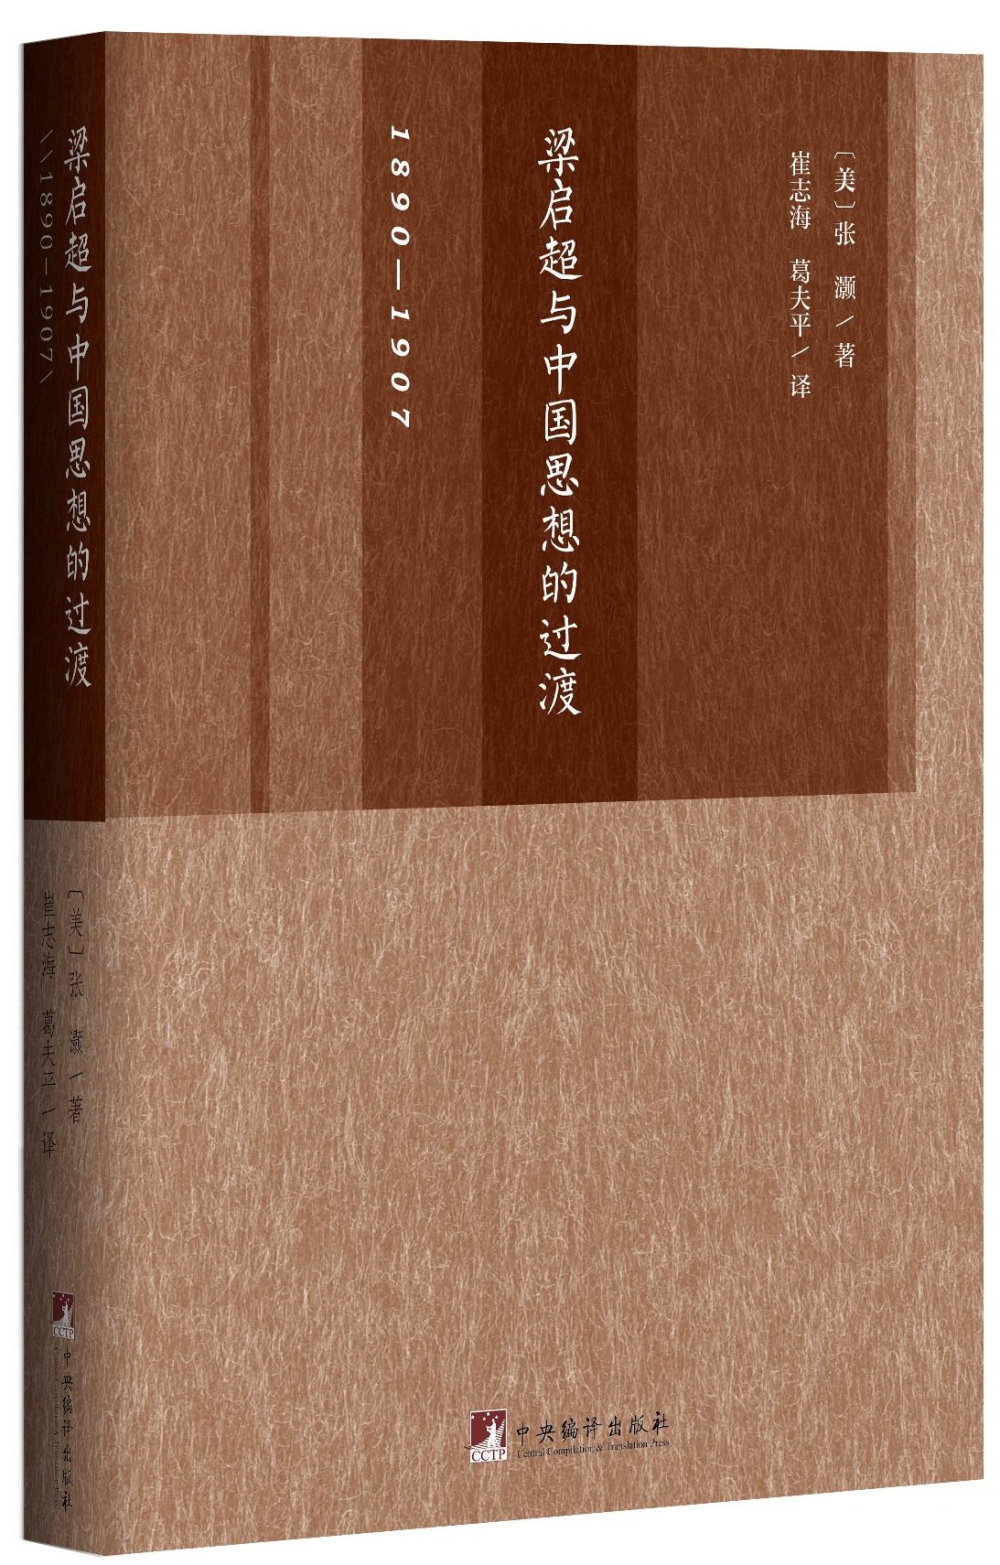 梁啟超與中國思想的過渡(1890-1907)